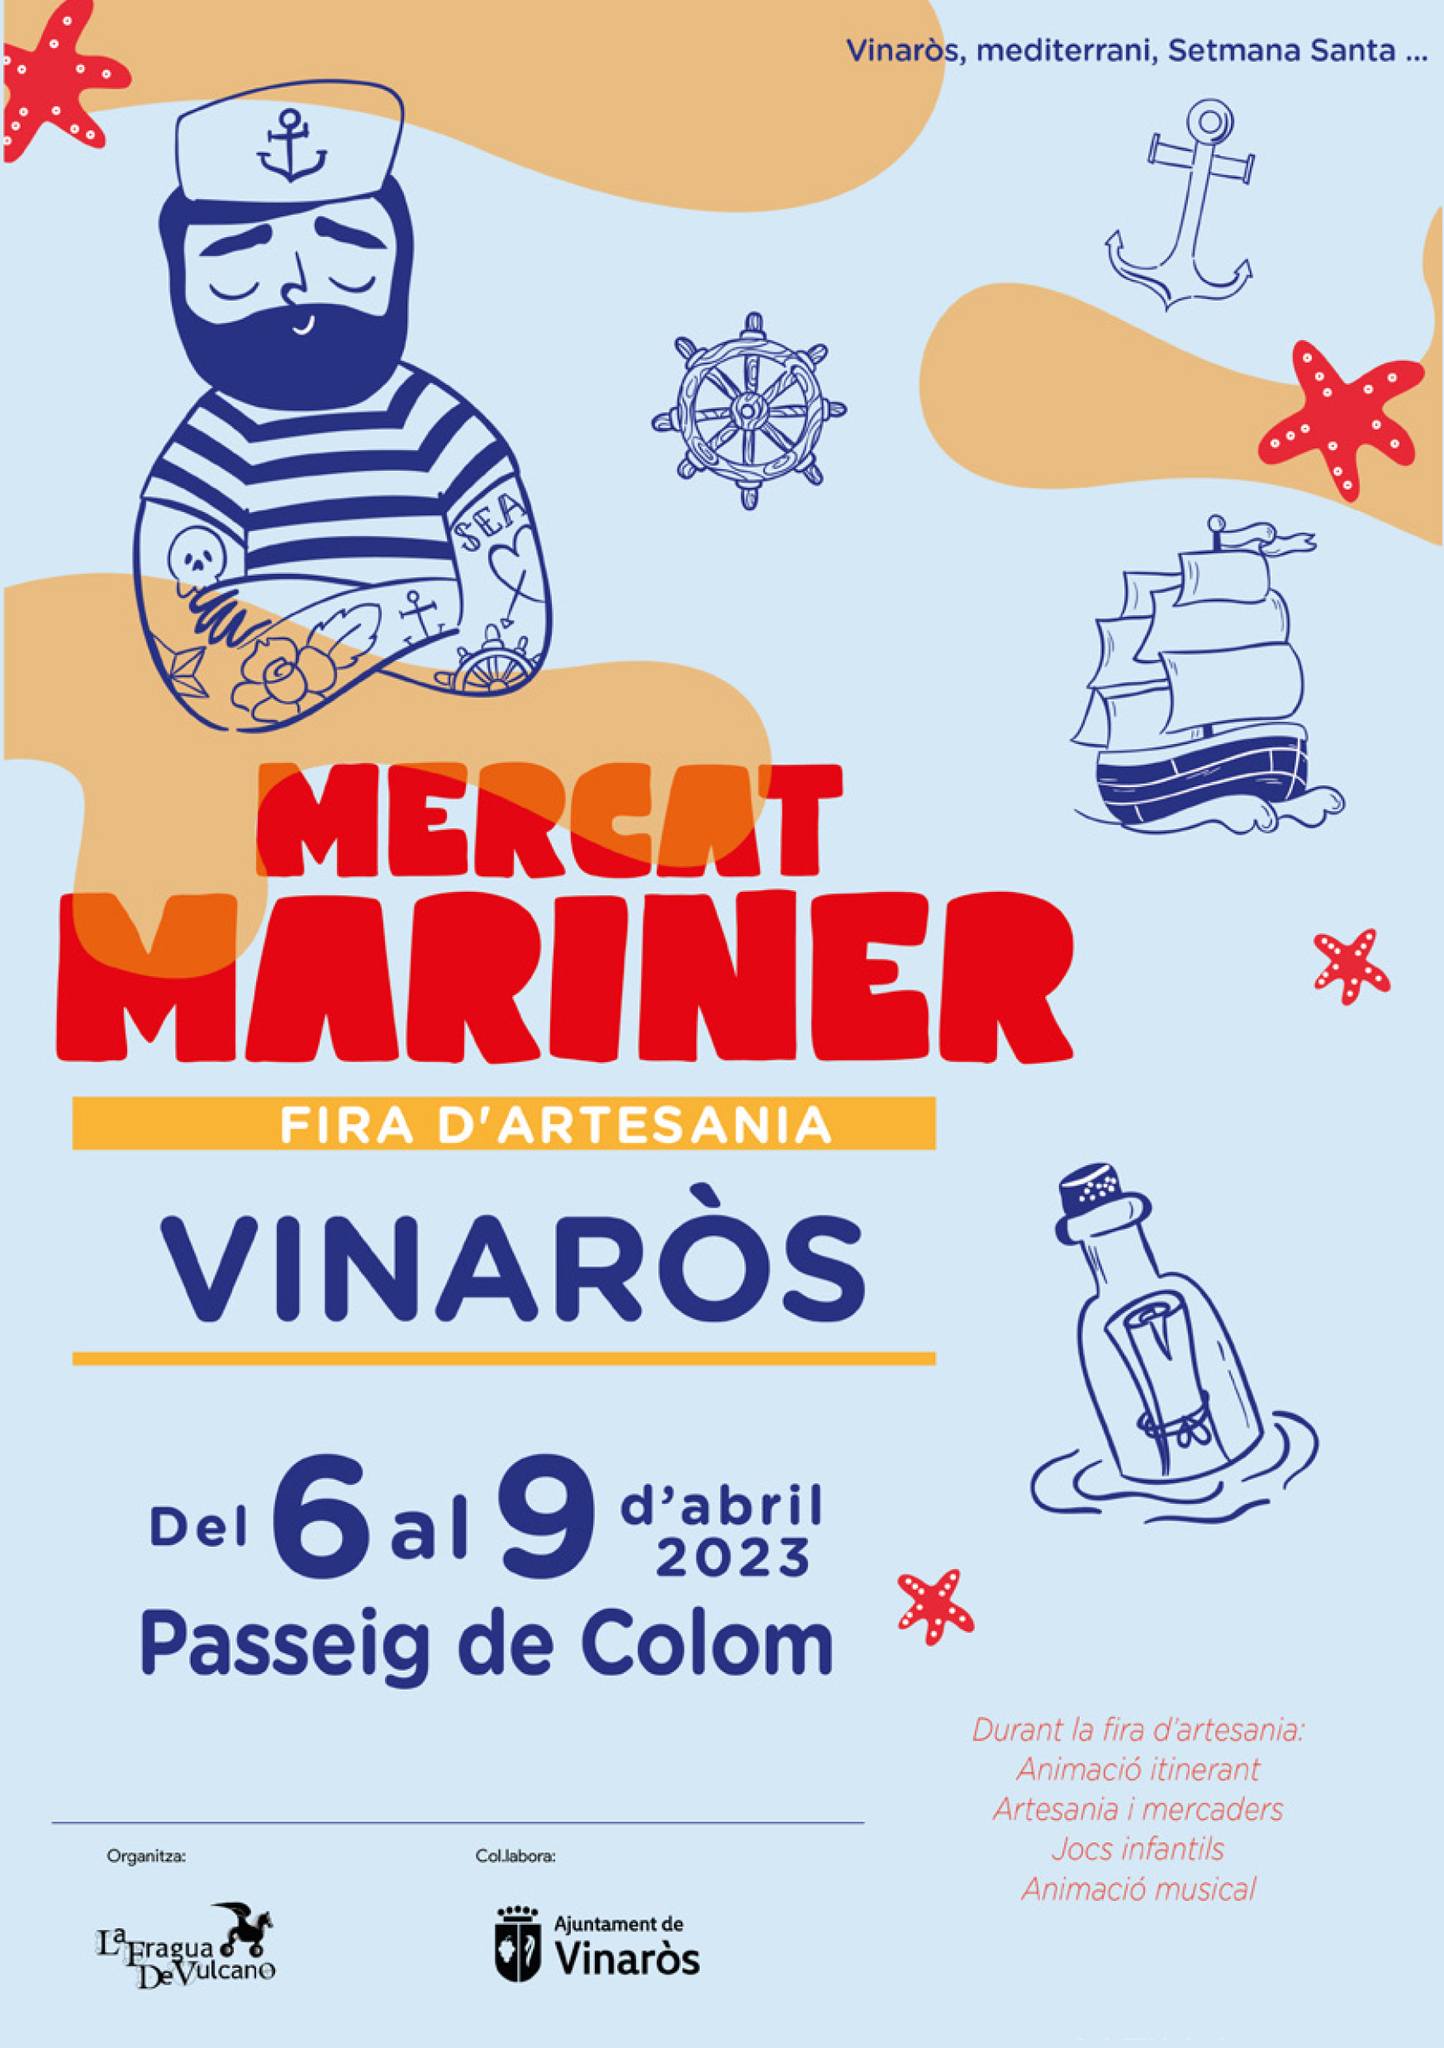 Mercat Mariner - Fira d'Artesania